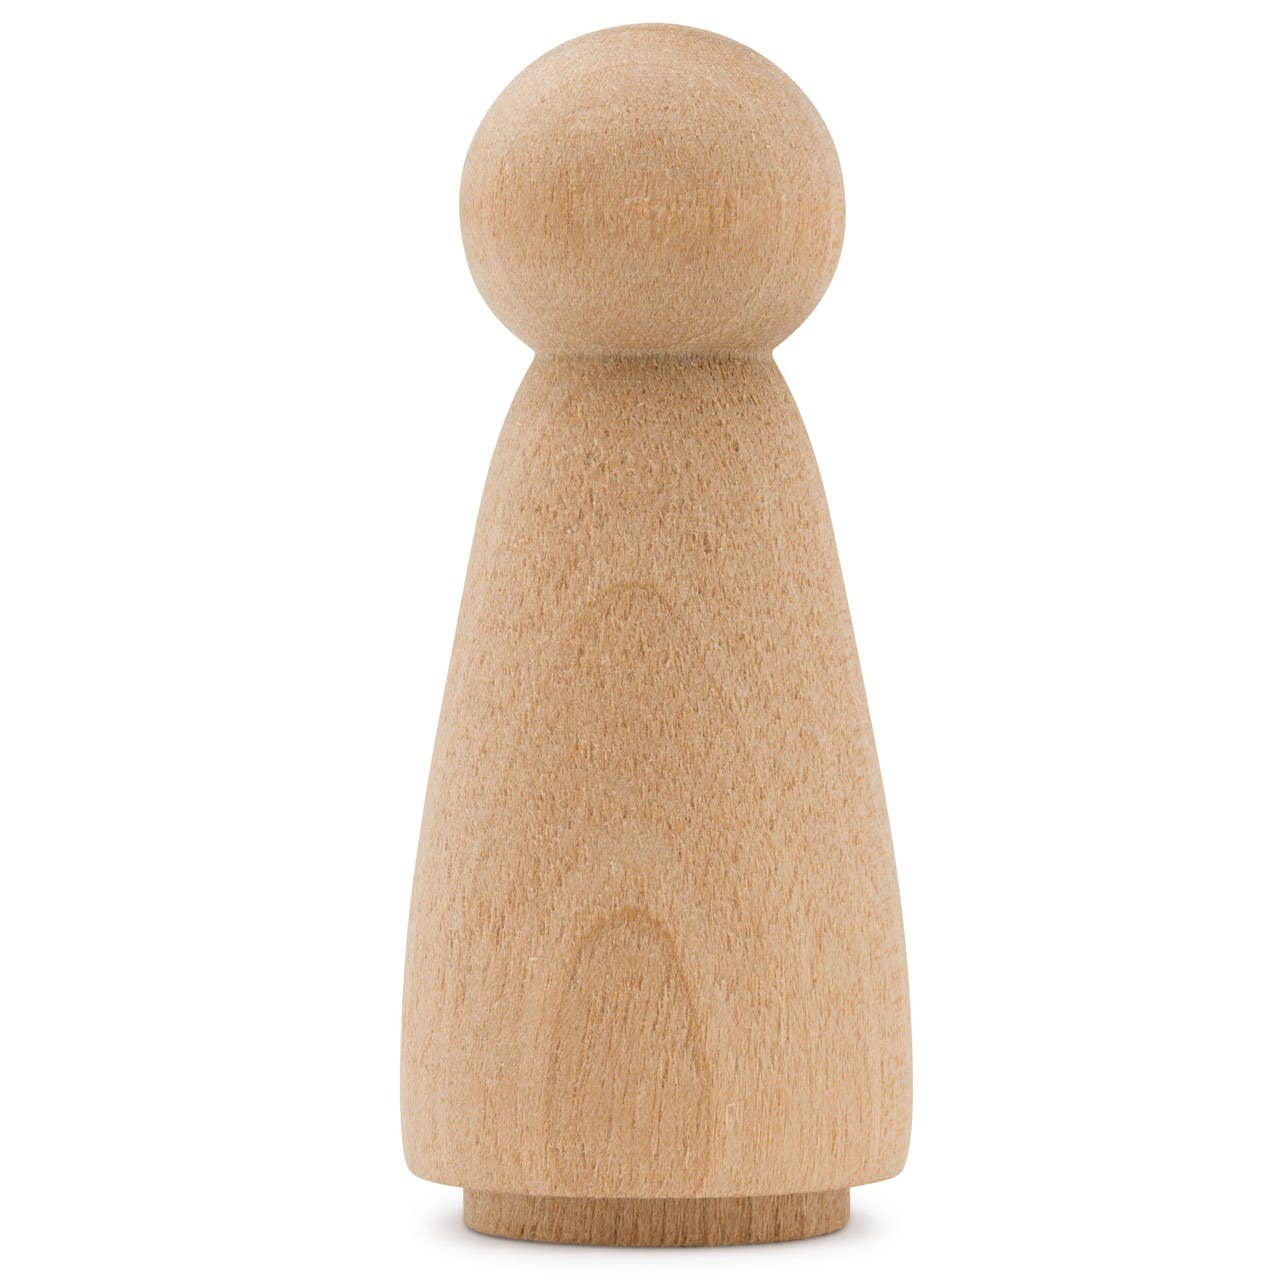 Wood Peg Doll, 1-3/4"